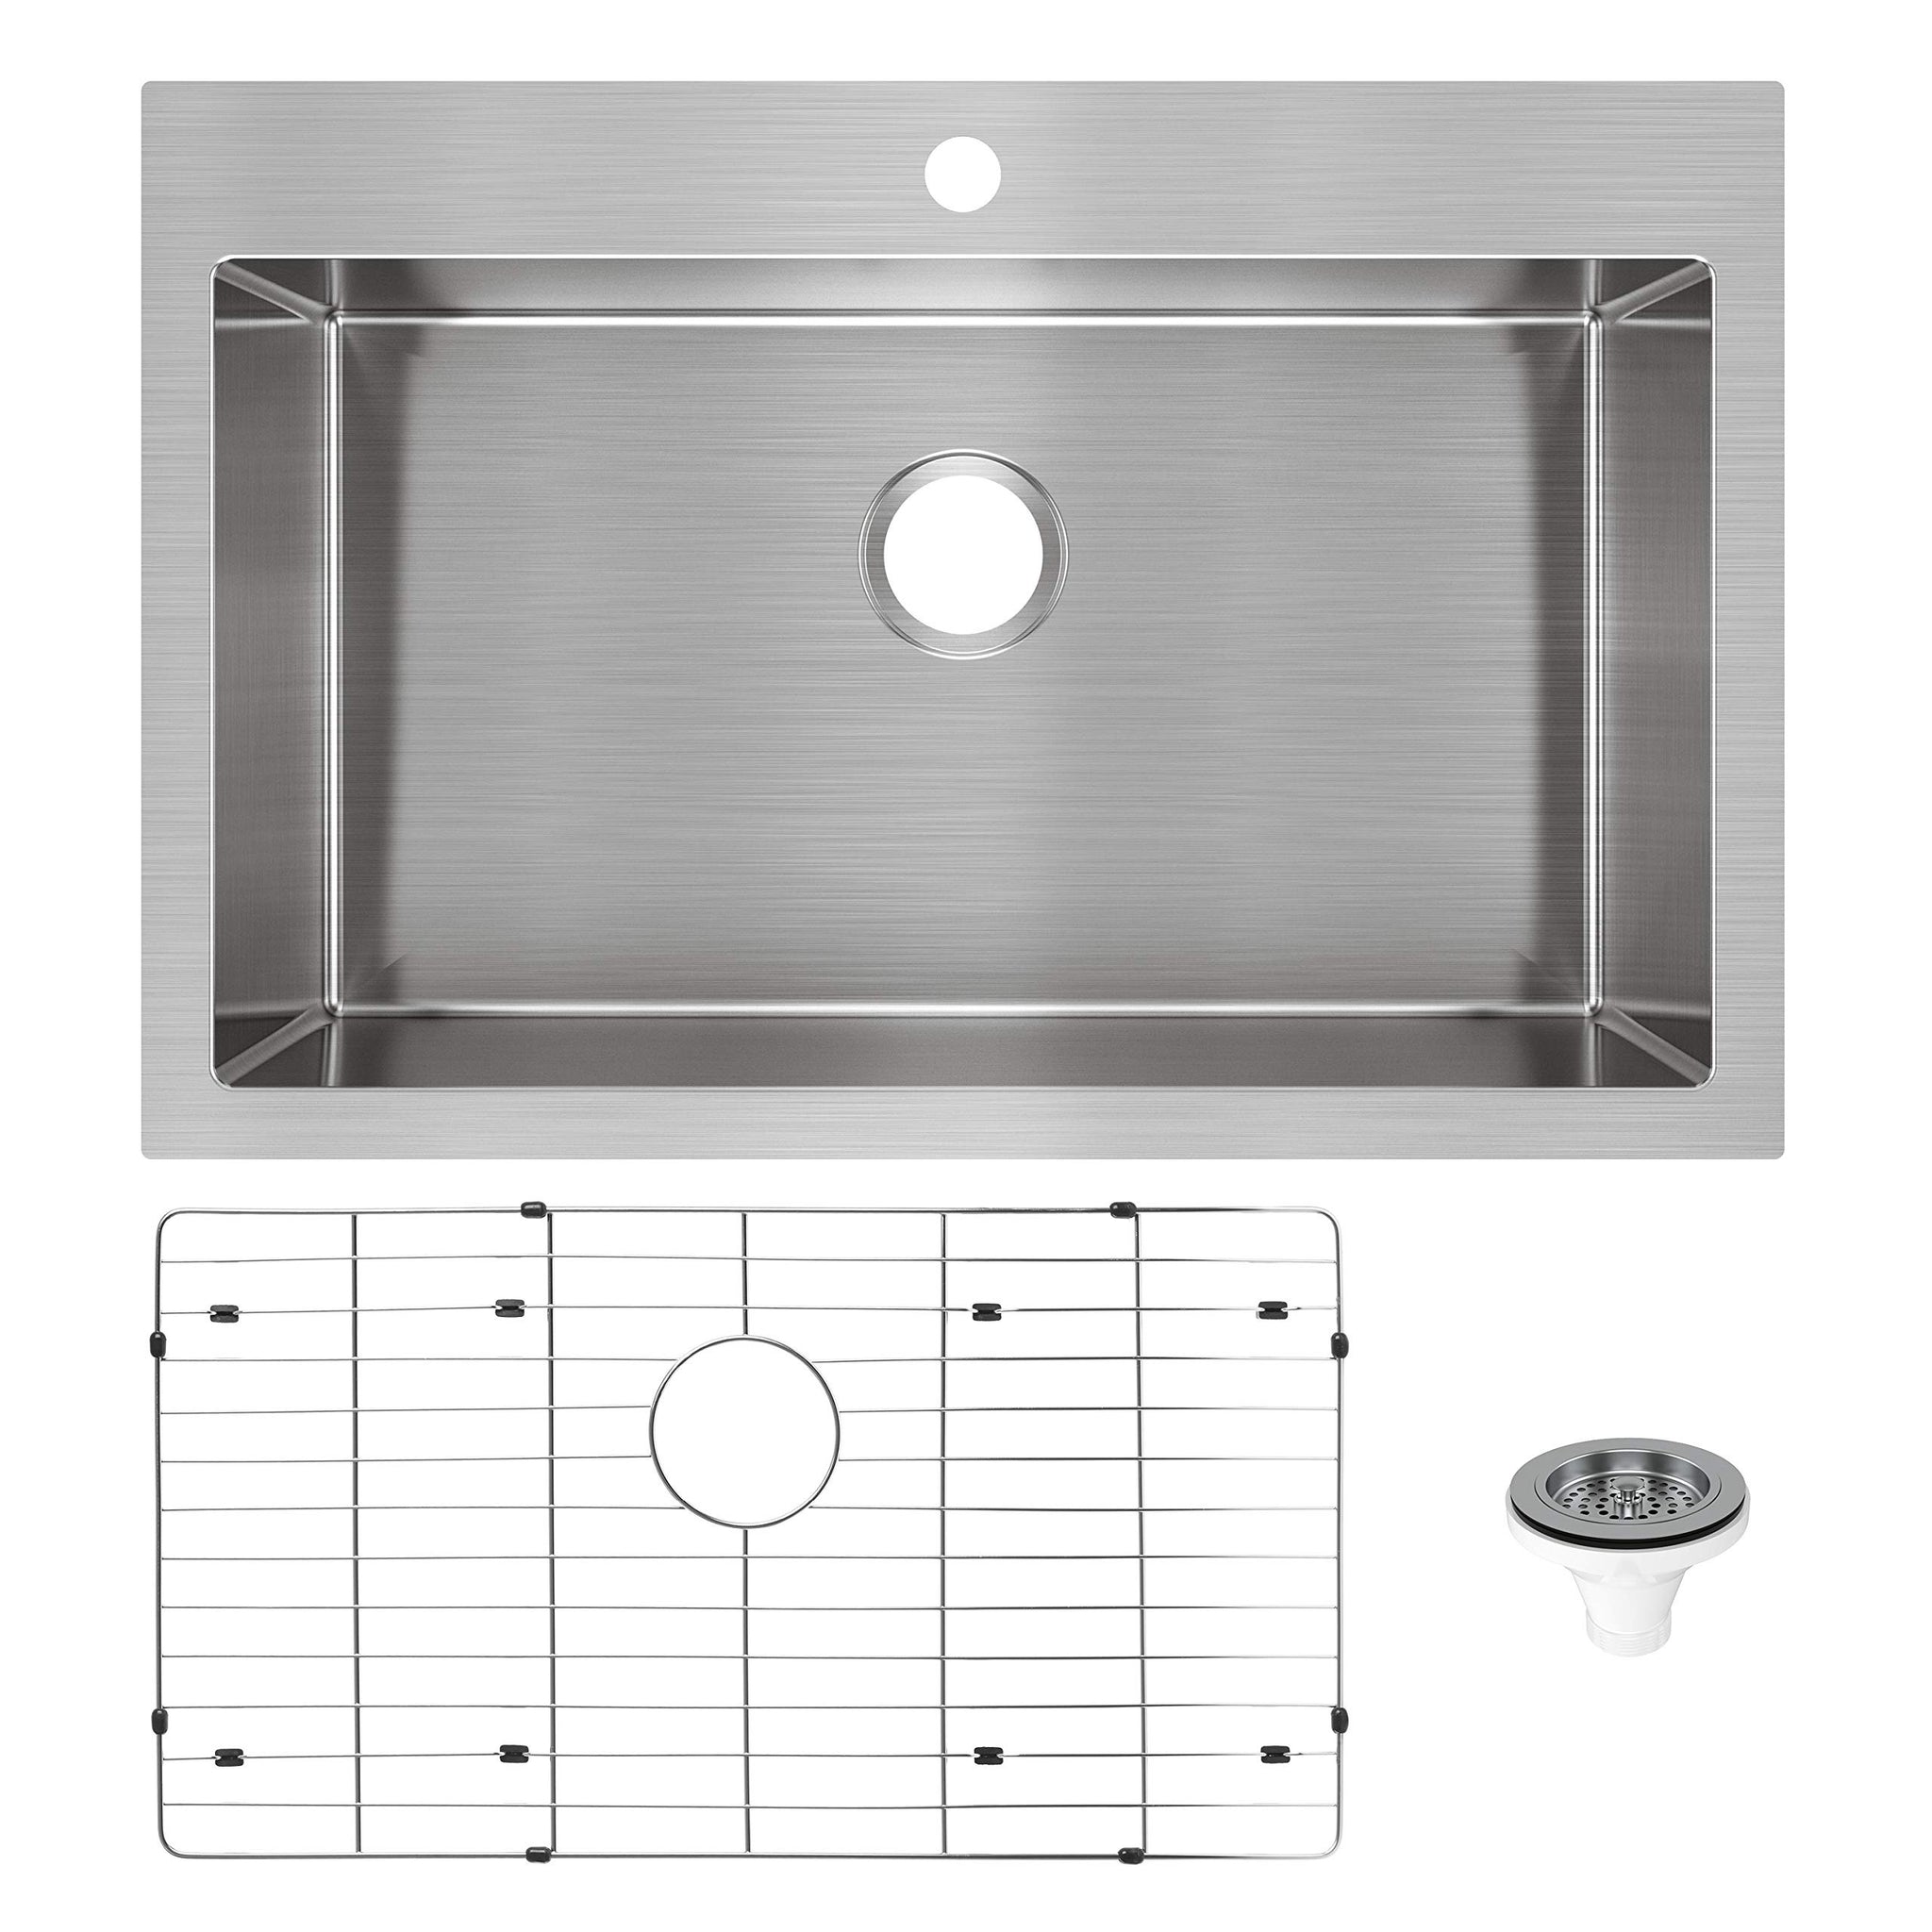 Artika Chelsea Single Sink - Stainless Steel - 20-in x 31-in x 9-in - Drop-In/Undermount